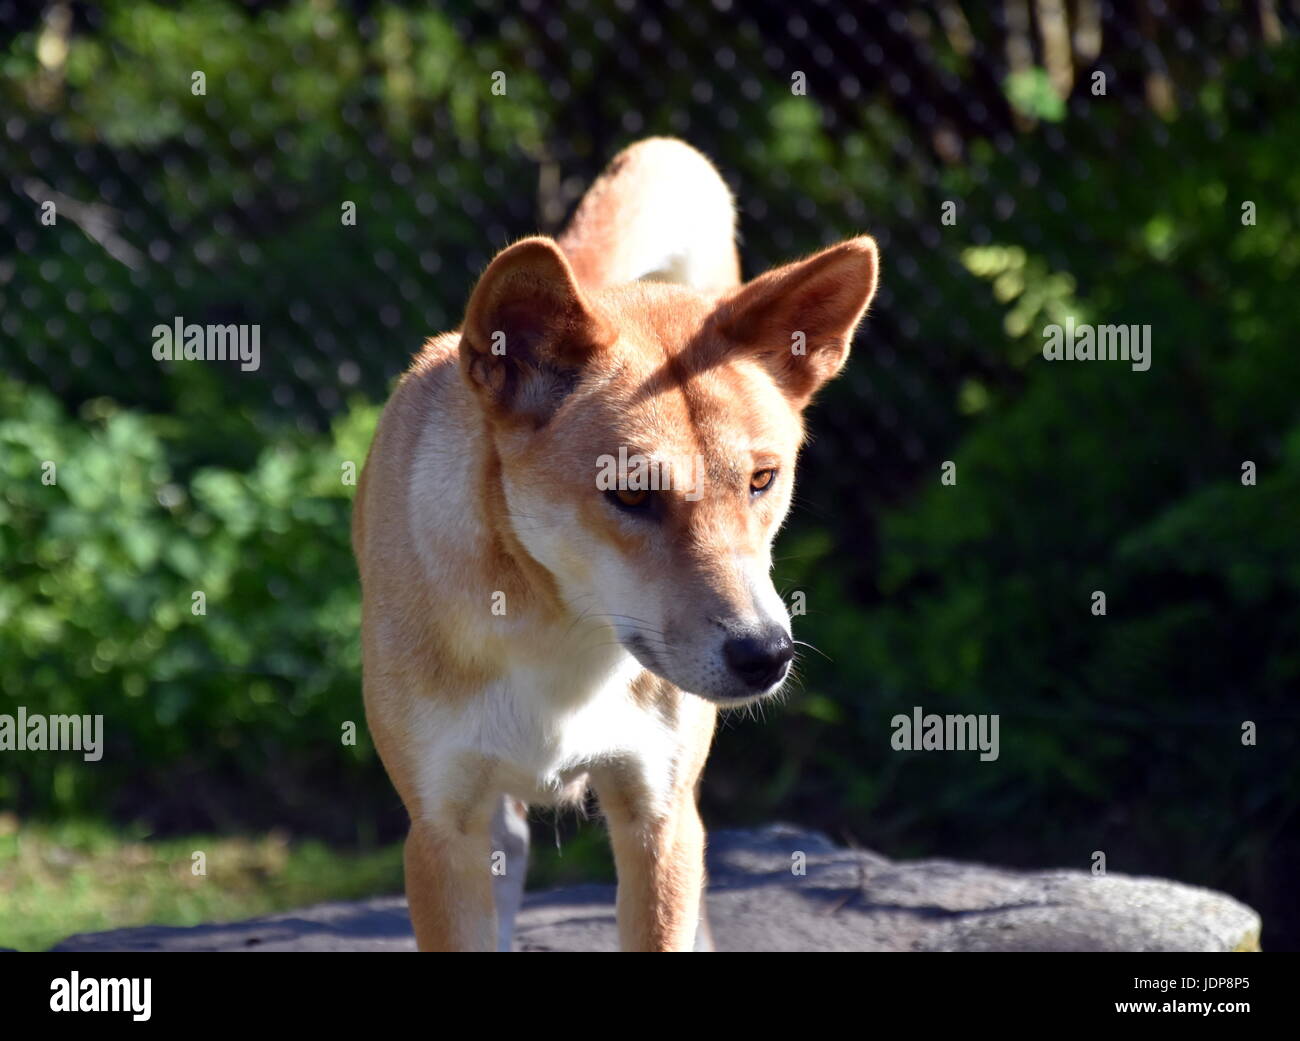 Der Dingo oder Canis Lupus ist ein freilebenden Hund hauptsächlich in Australien gefunden. Australische Dingos zum Entspannen in der Sonne am Nachmittag. Stockfoto